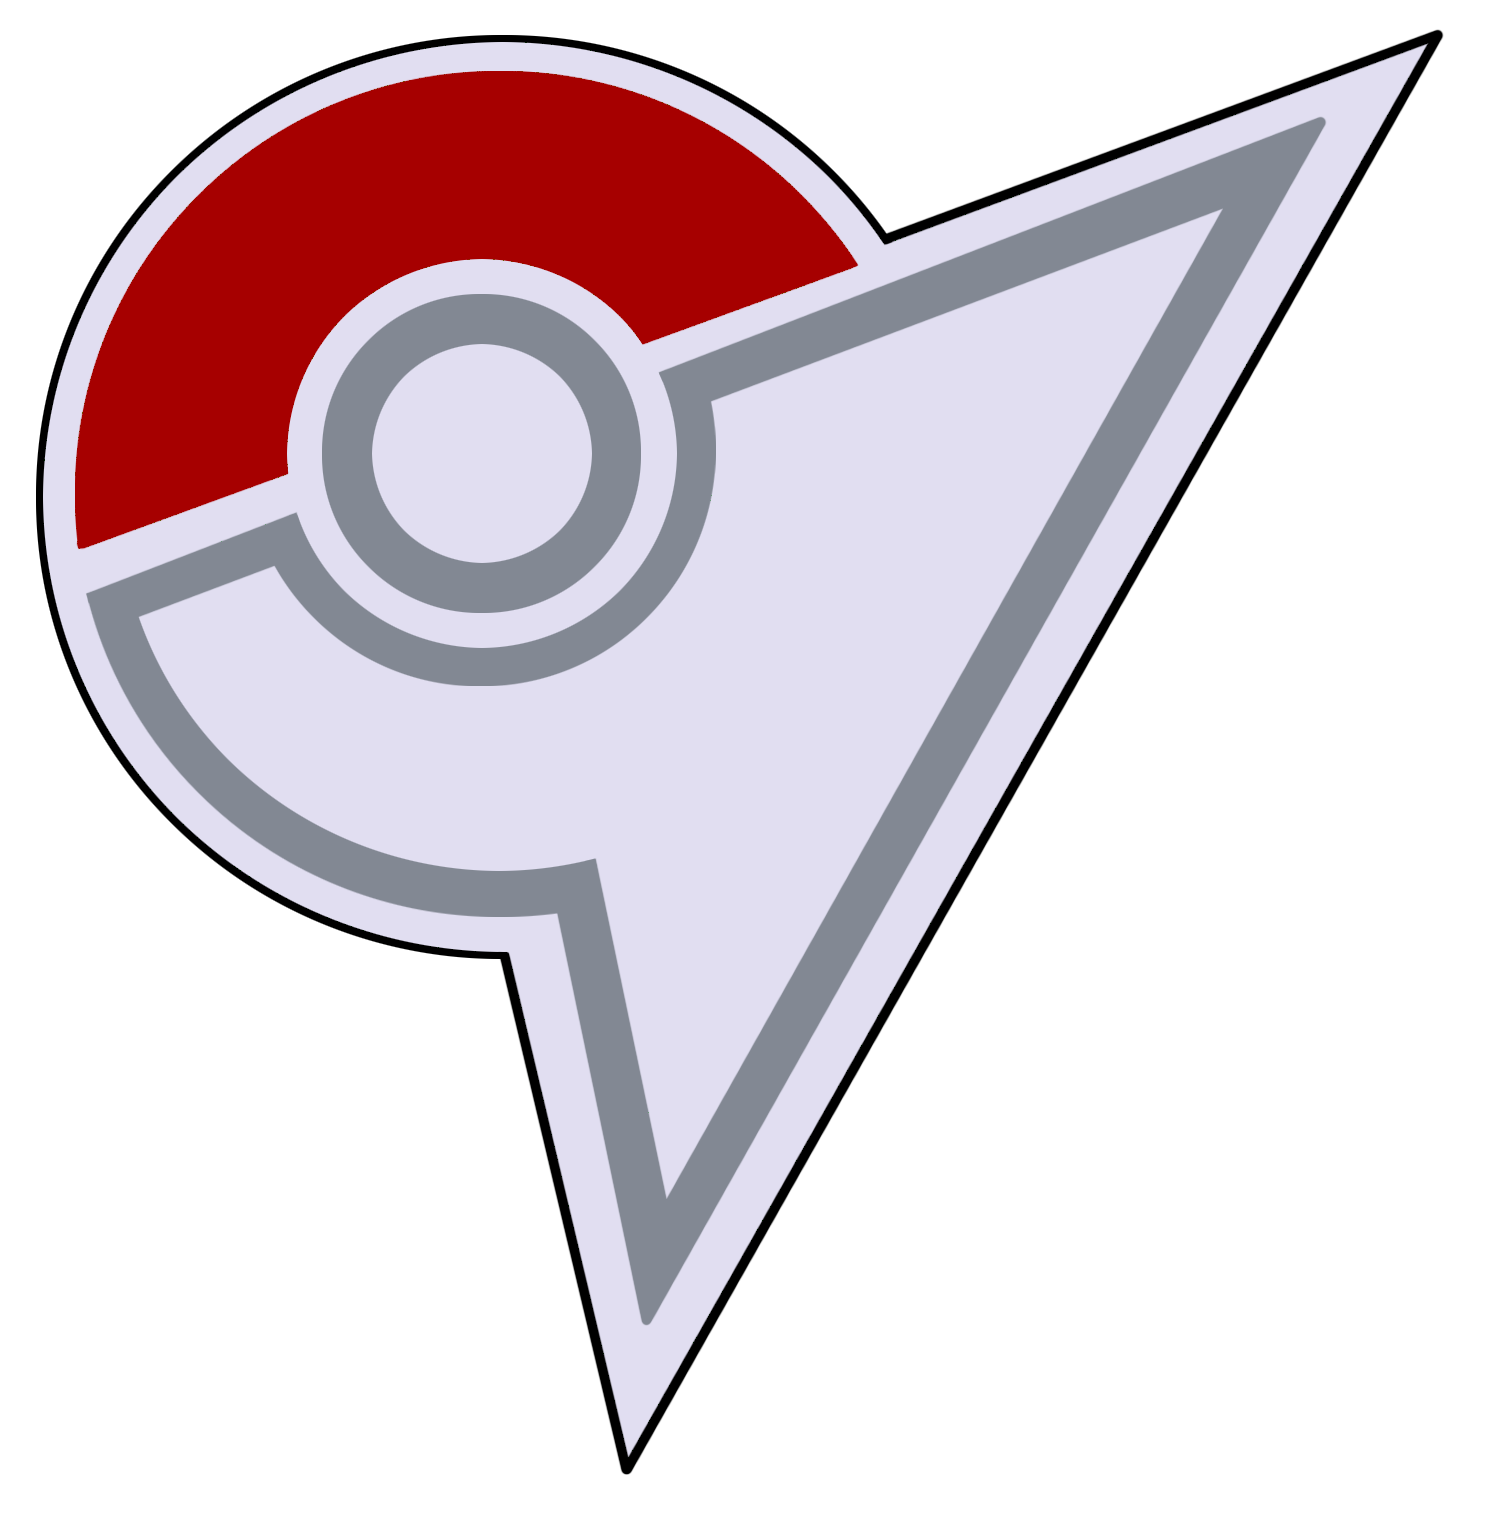 Pokemon Logos